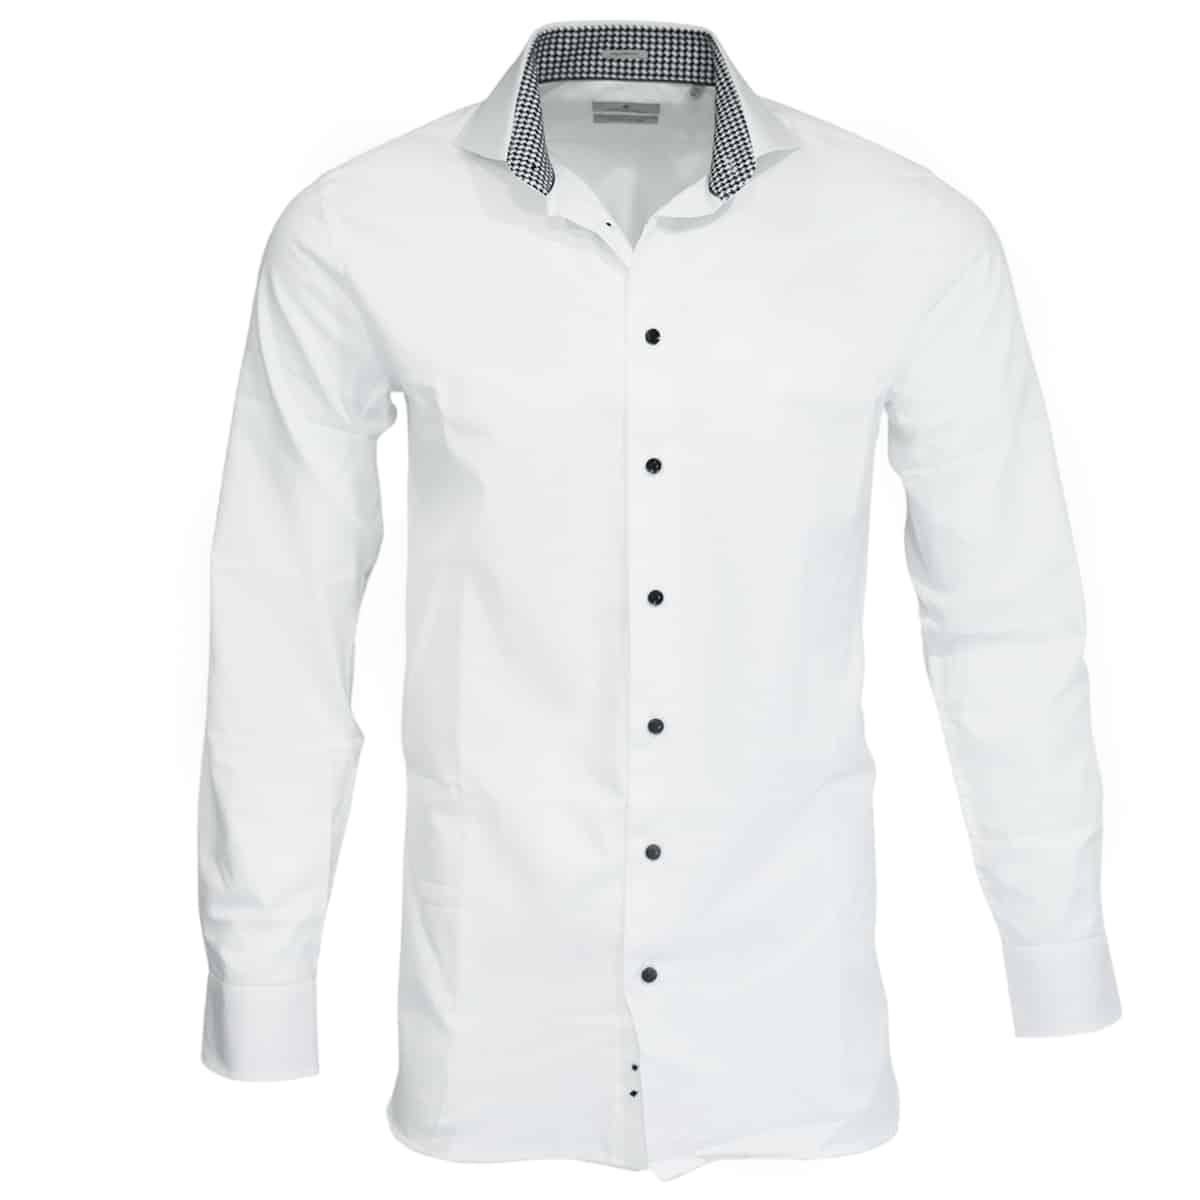 Thomas Maine white shirt check collar1